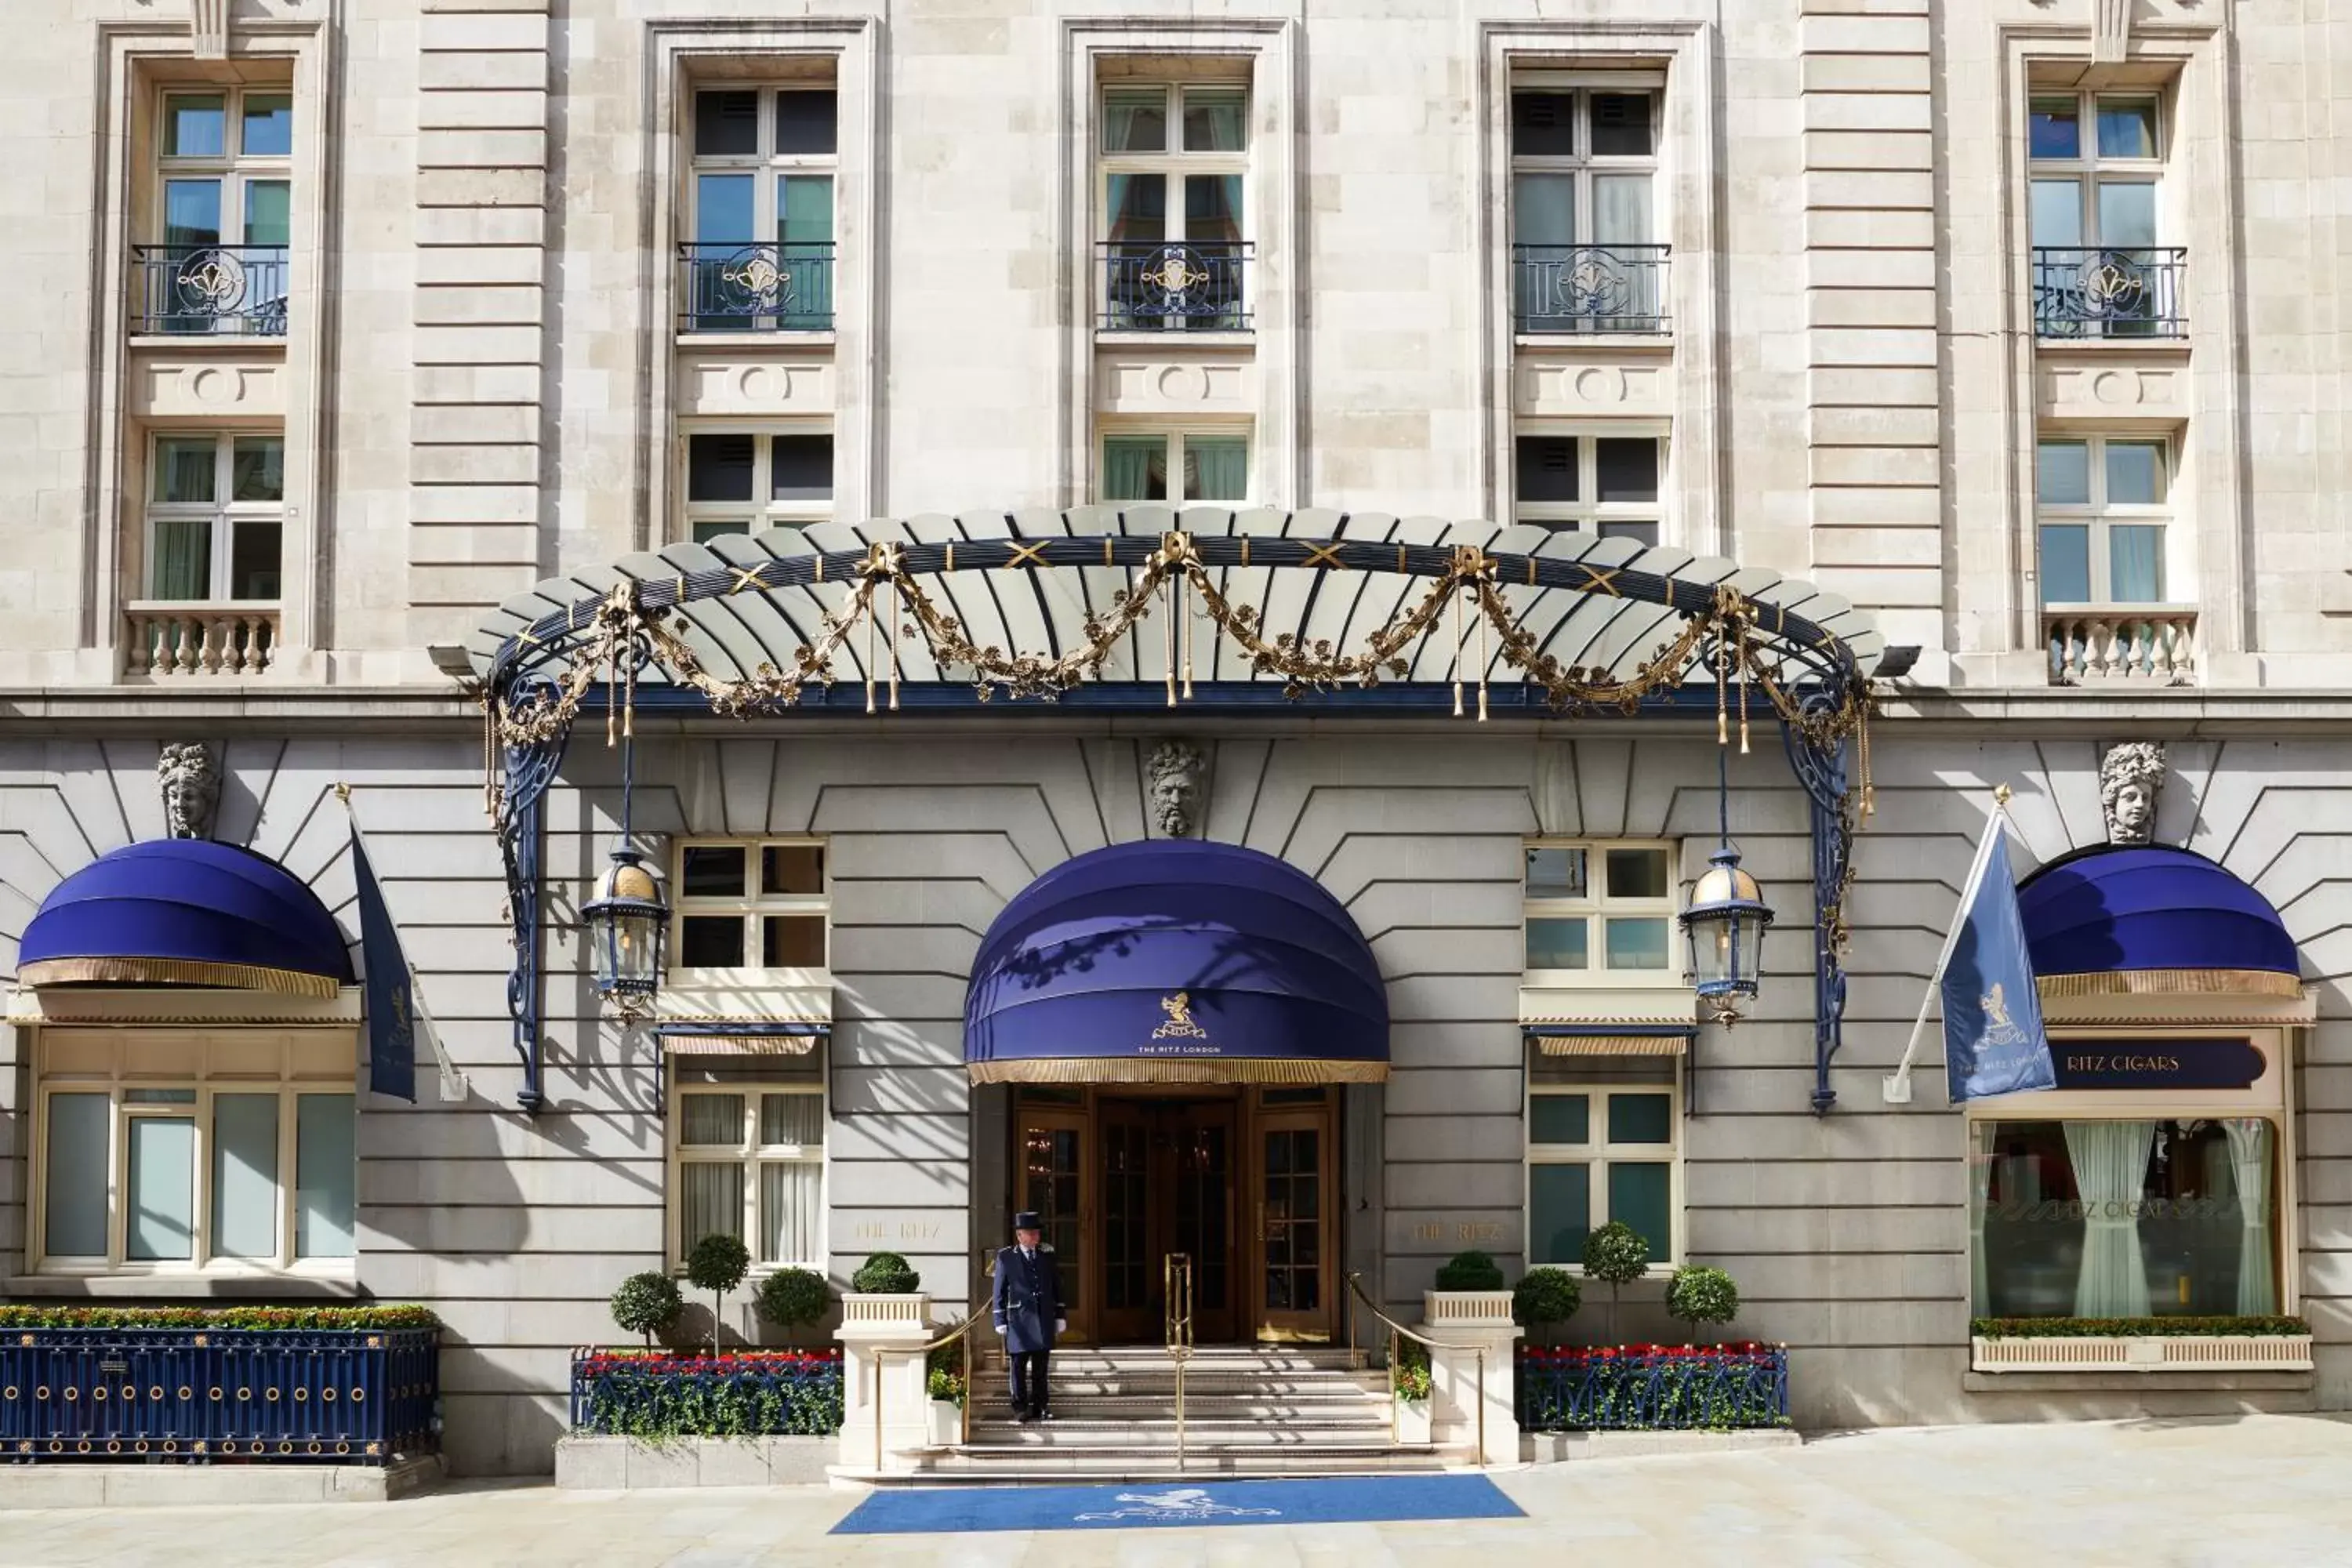 Facade/entrance, Property Building in The Ritz London